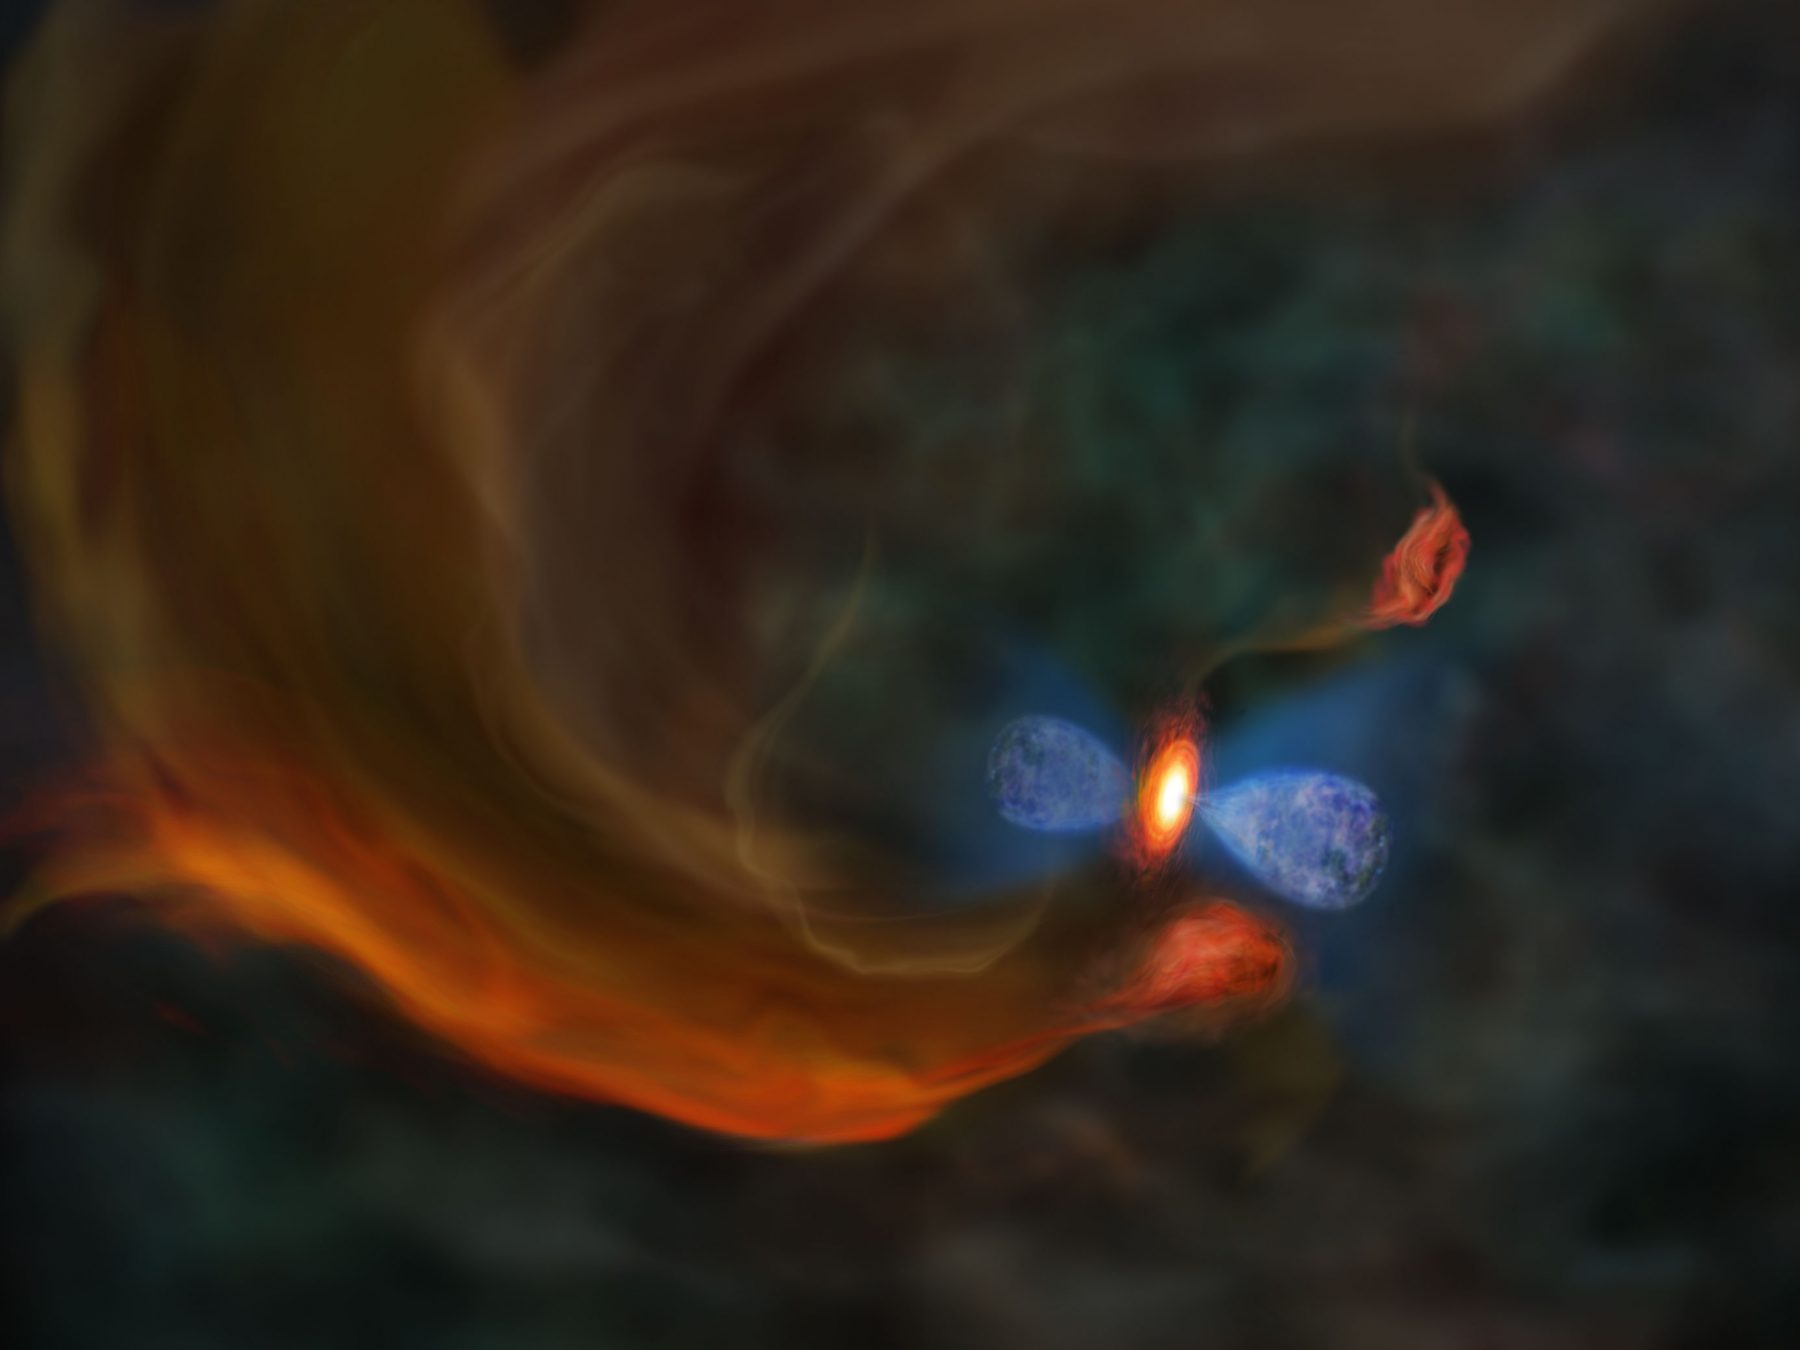 プレスリリース - アルマ望遠鏡が目撃したダイナミックな星の誕生 